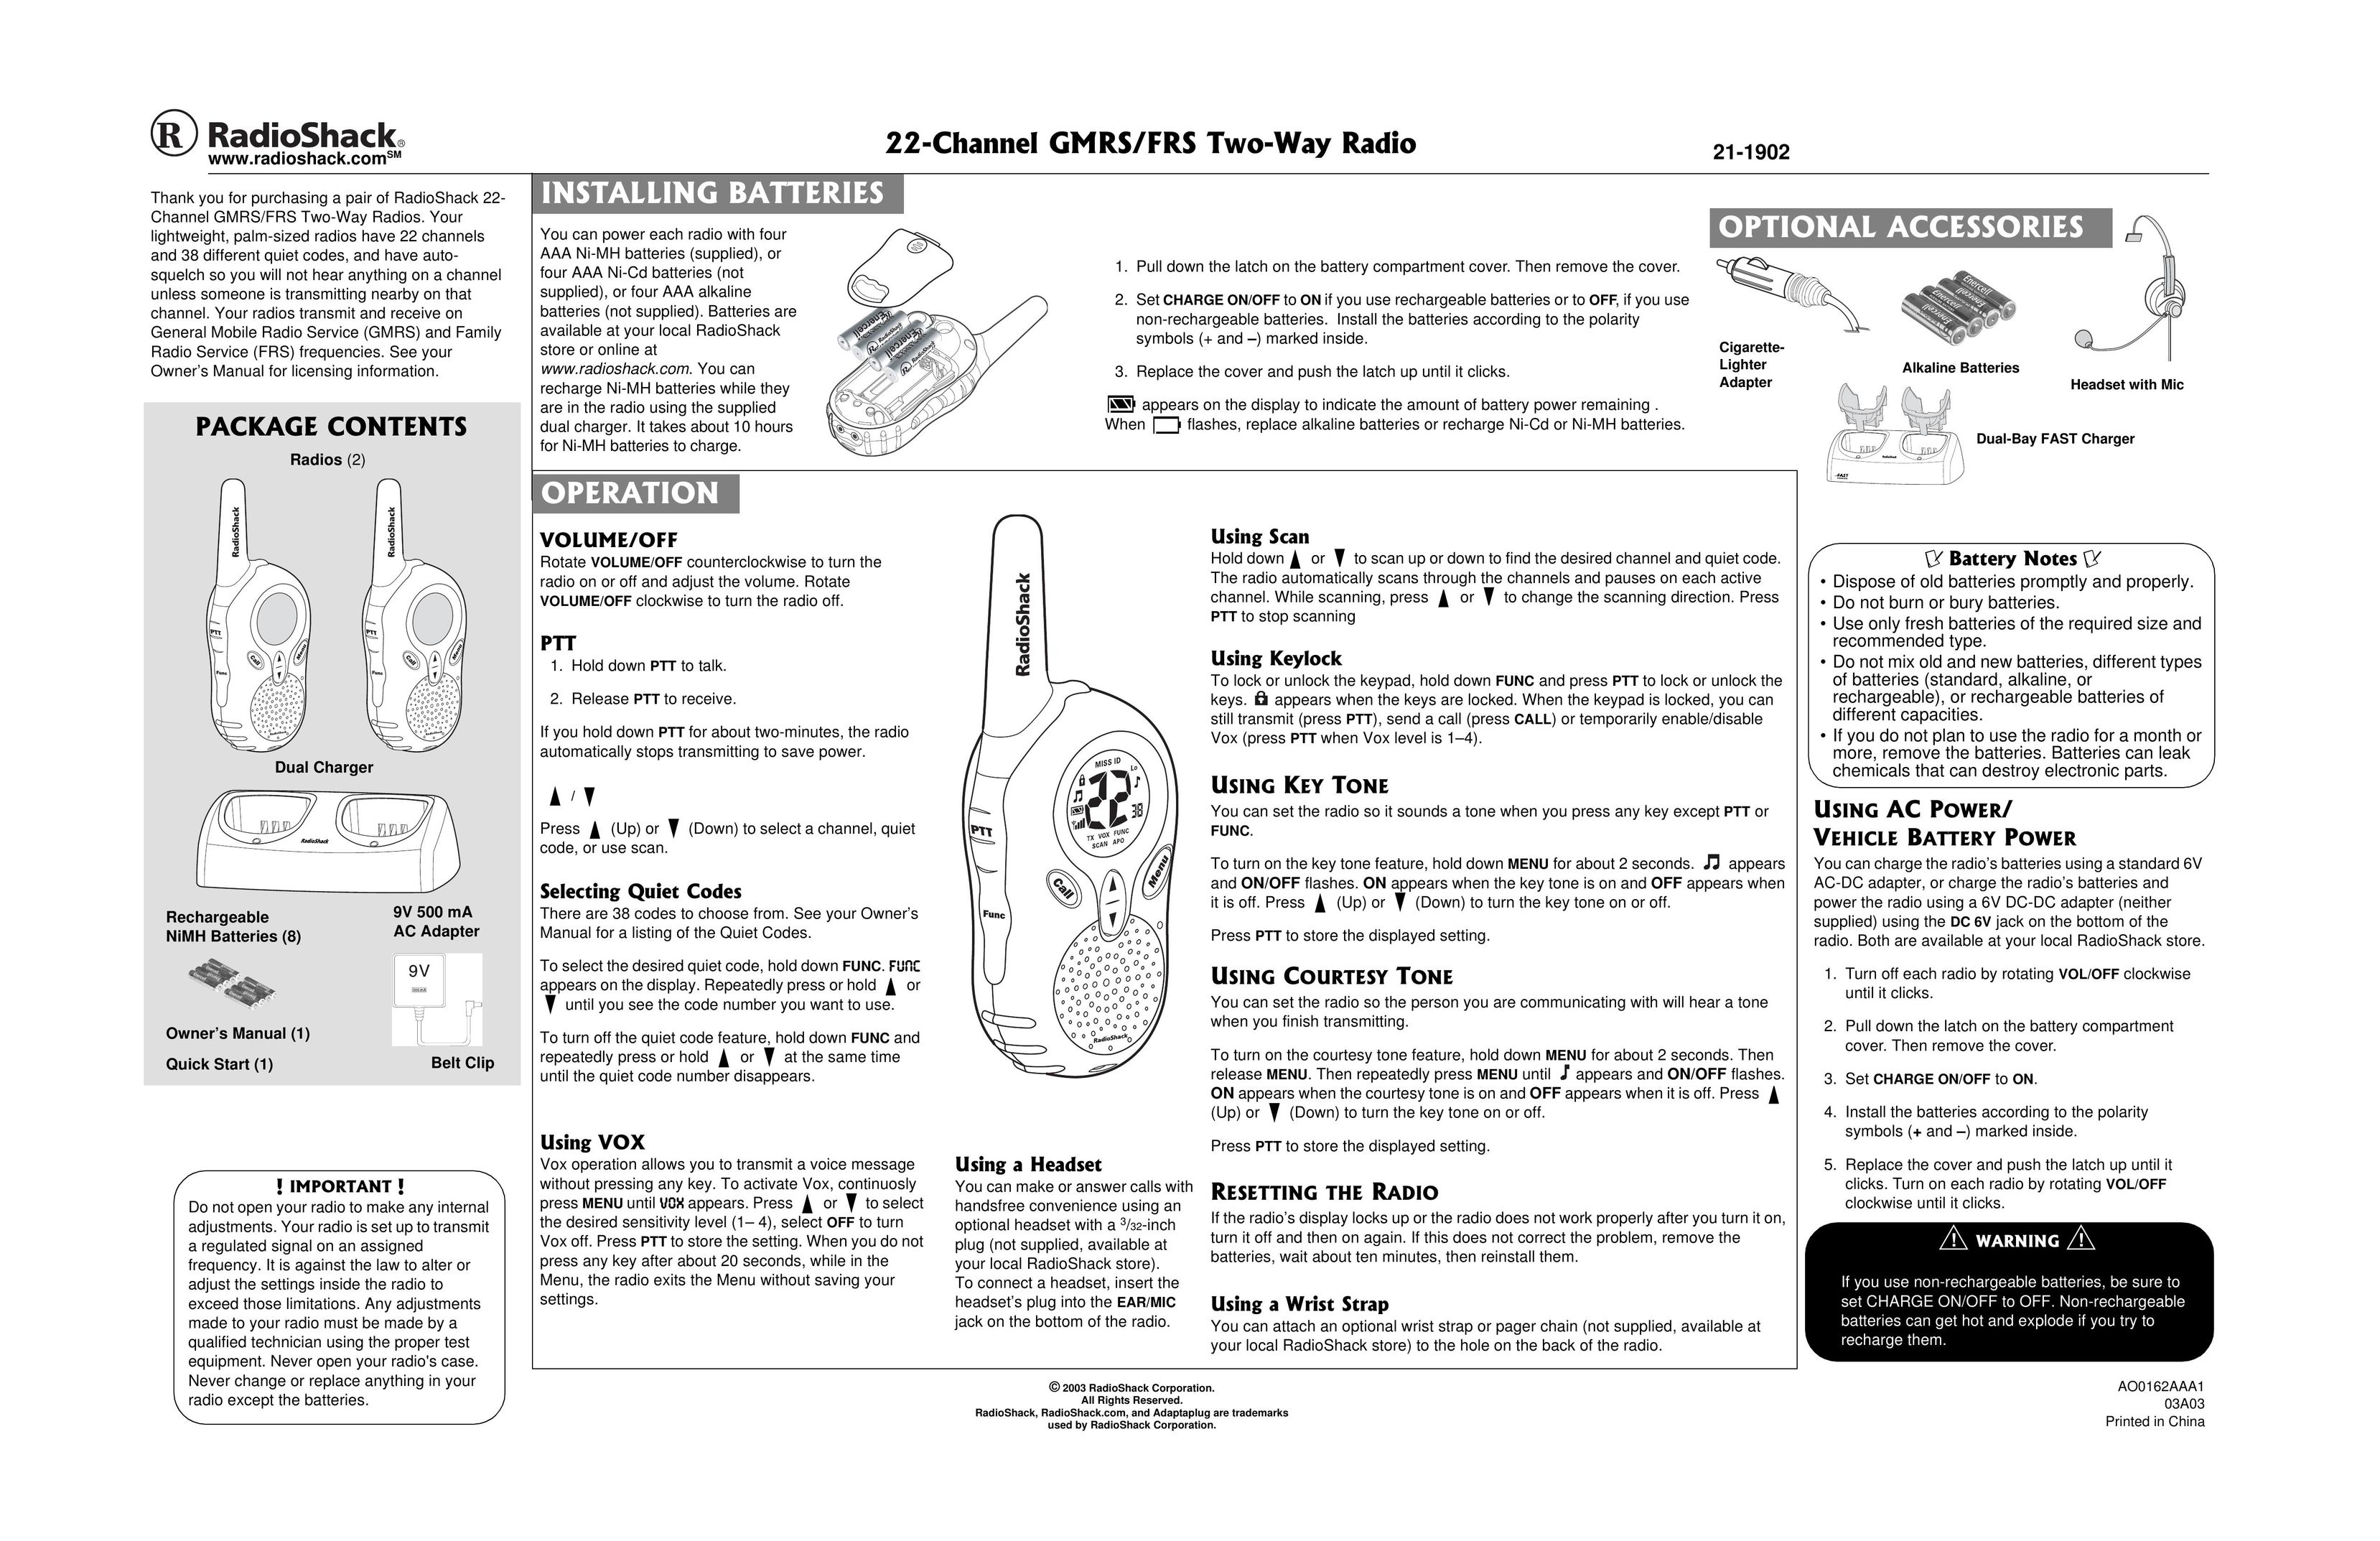 Radio Shack AO0162AAA1 Two-Way Radio User Manual